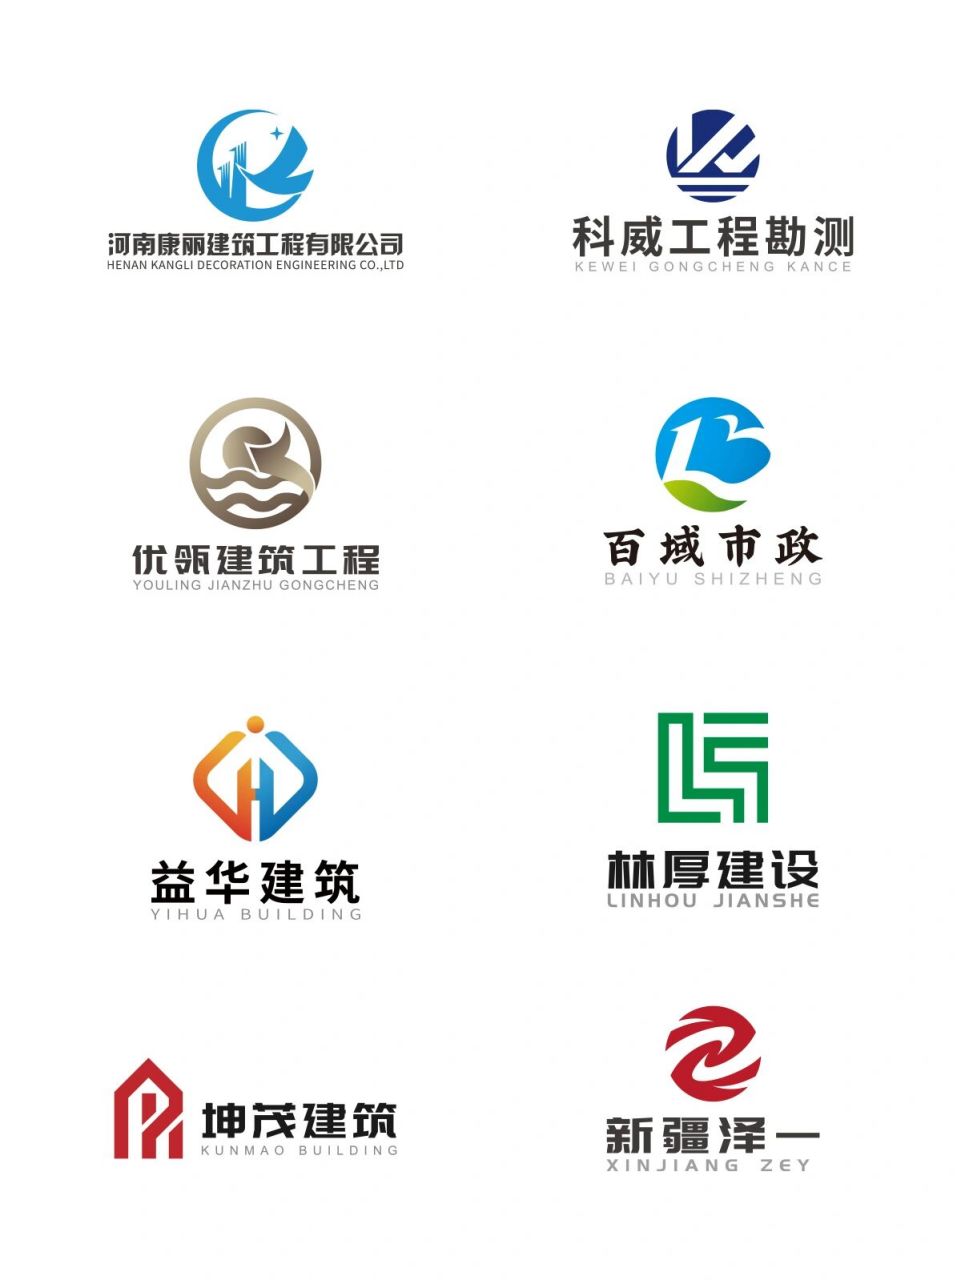 建筑工程行业logo设计合集(原创) 分享一些之前设计的建筑工程行业